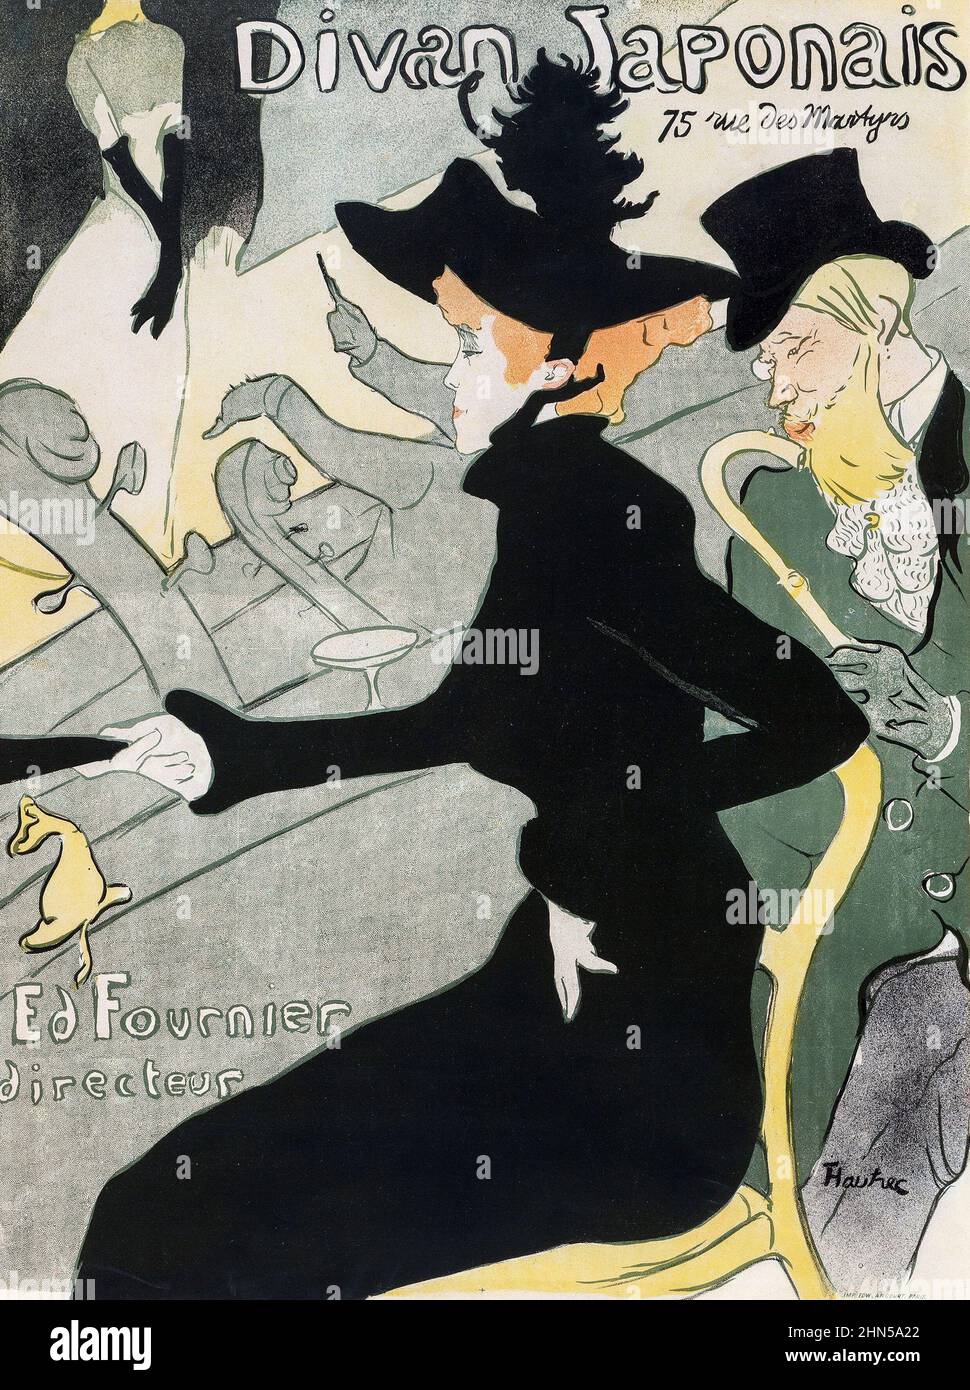 Divan Japonais, ein Plakat des Künstlers Henri de Toulouse-Lautrec. Es wurde geschaffen, um für einen Café-Chantant zu werben, der zu der Zeit als Divan Japonais bekannt war. 1892. Stockfoto